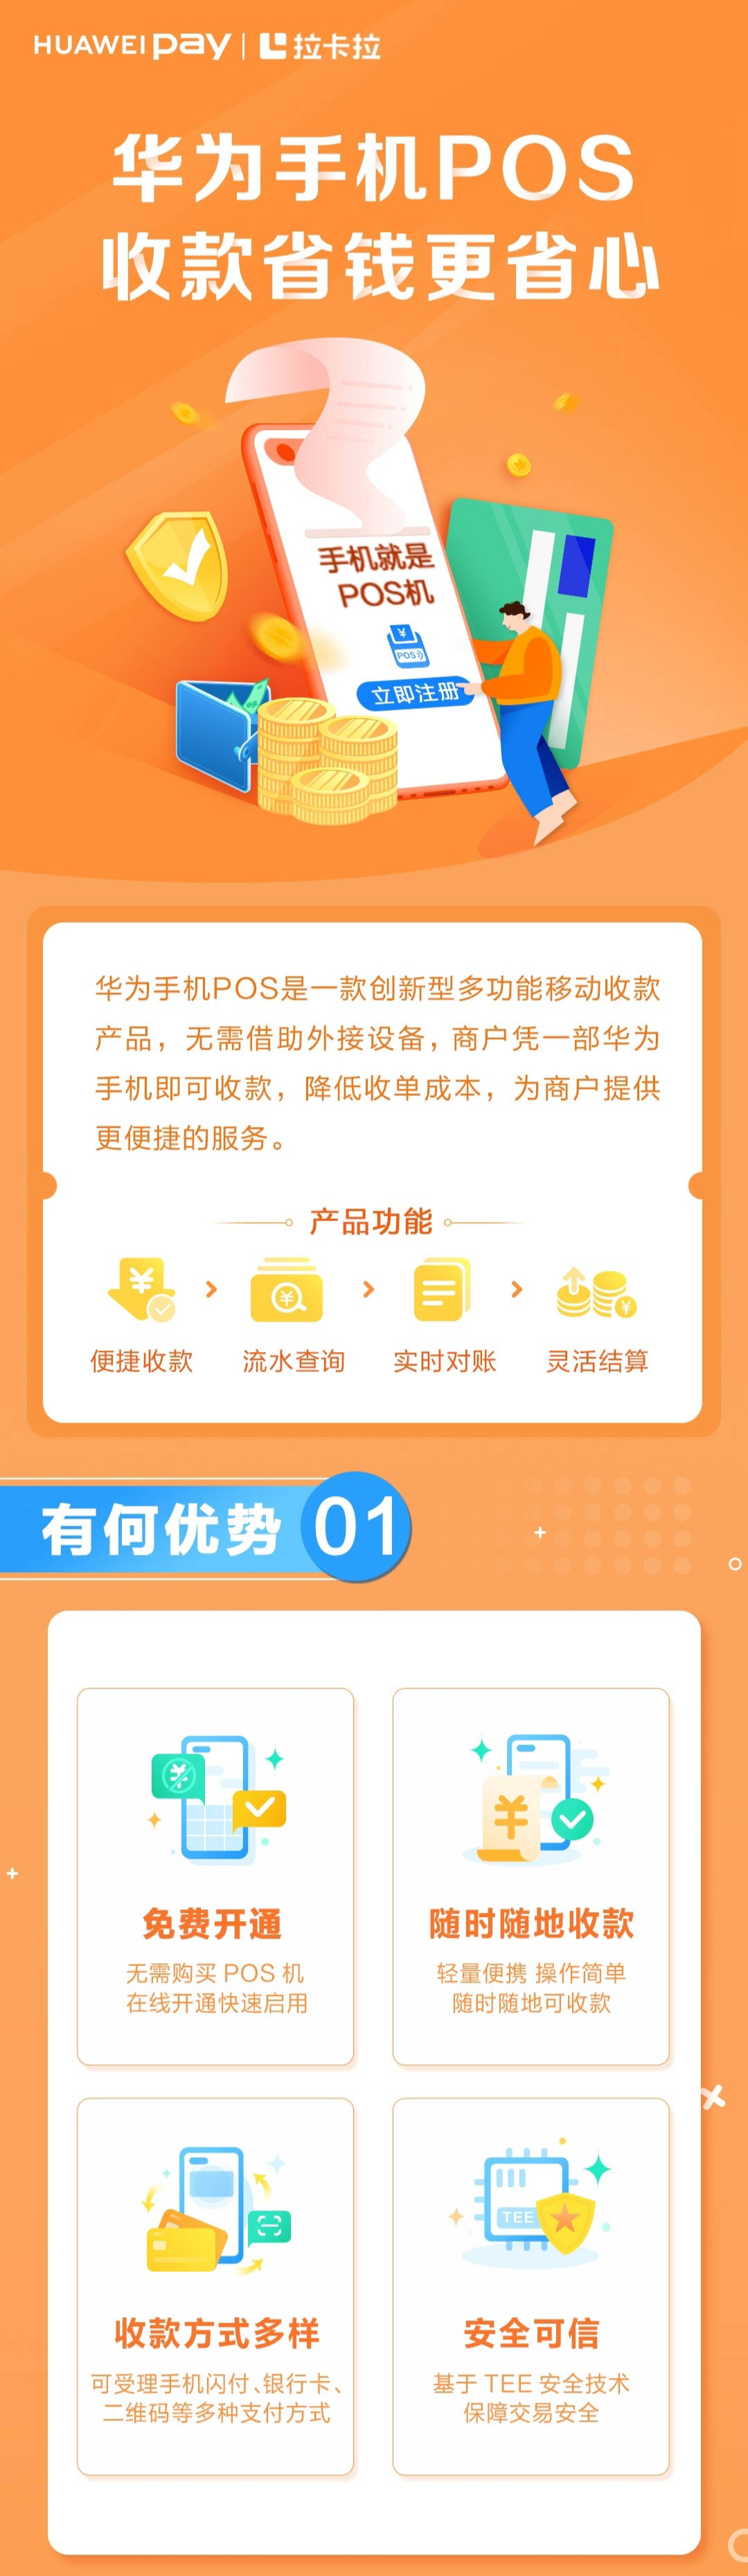 华为钱包 App 下线 POS 业务